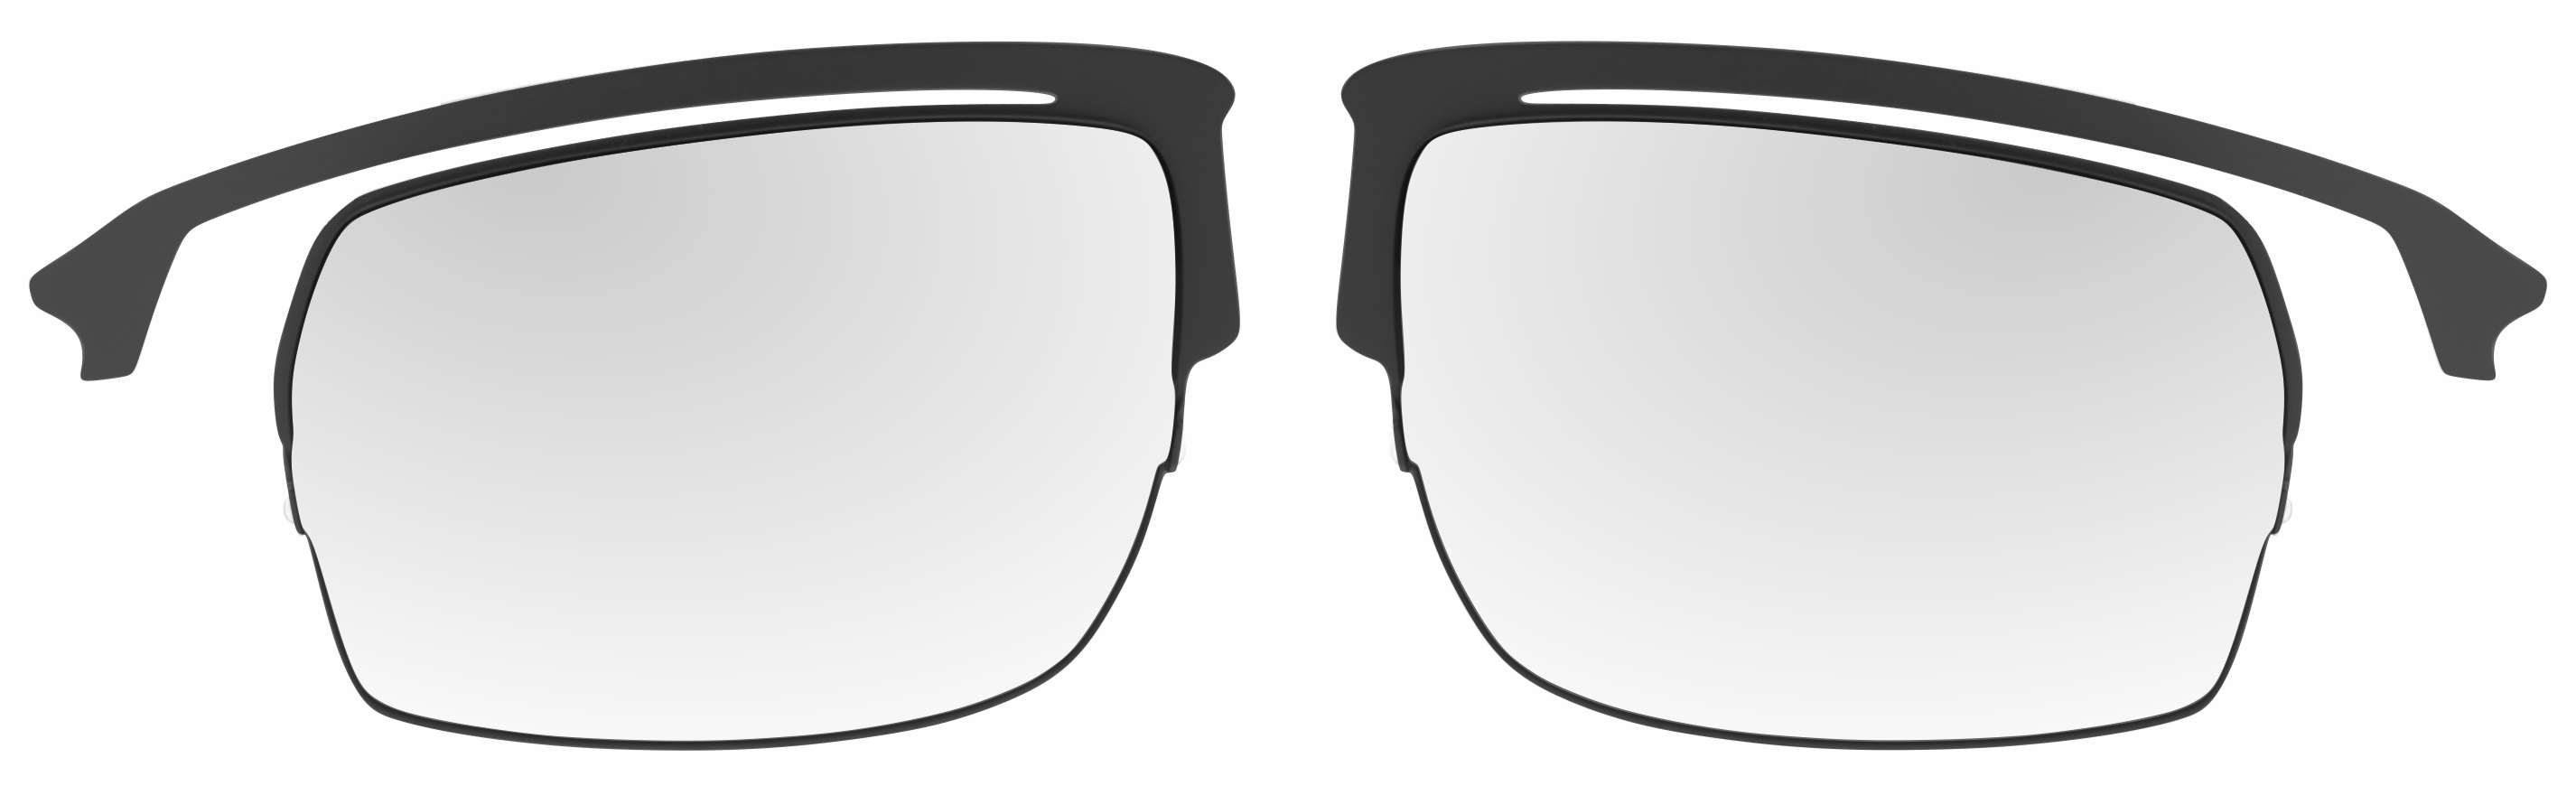 Optical half rim insert for sport sunglasses Racer AT063